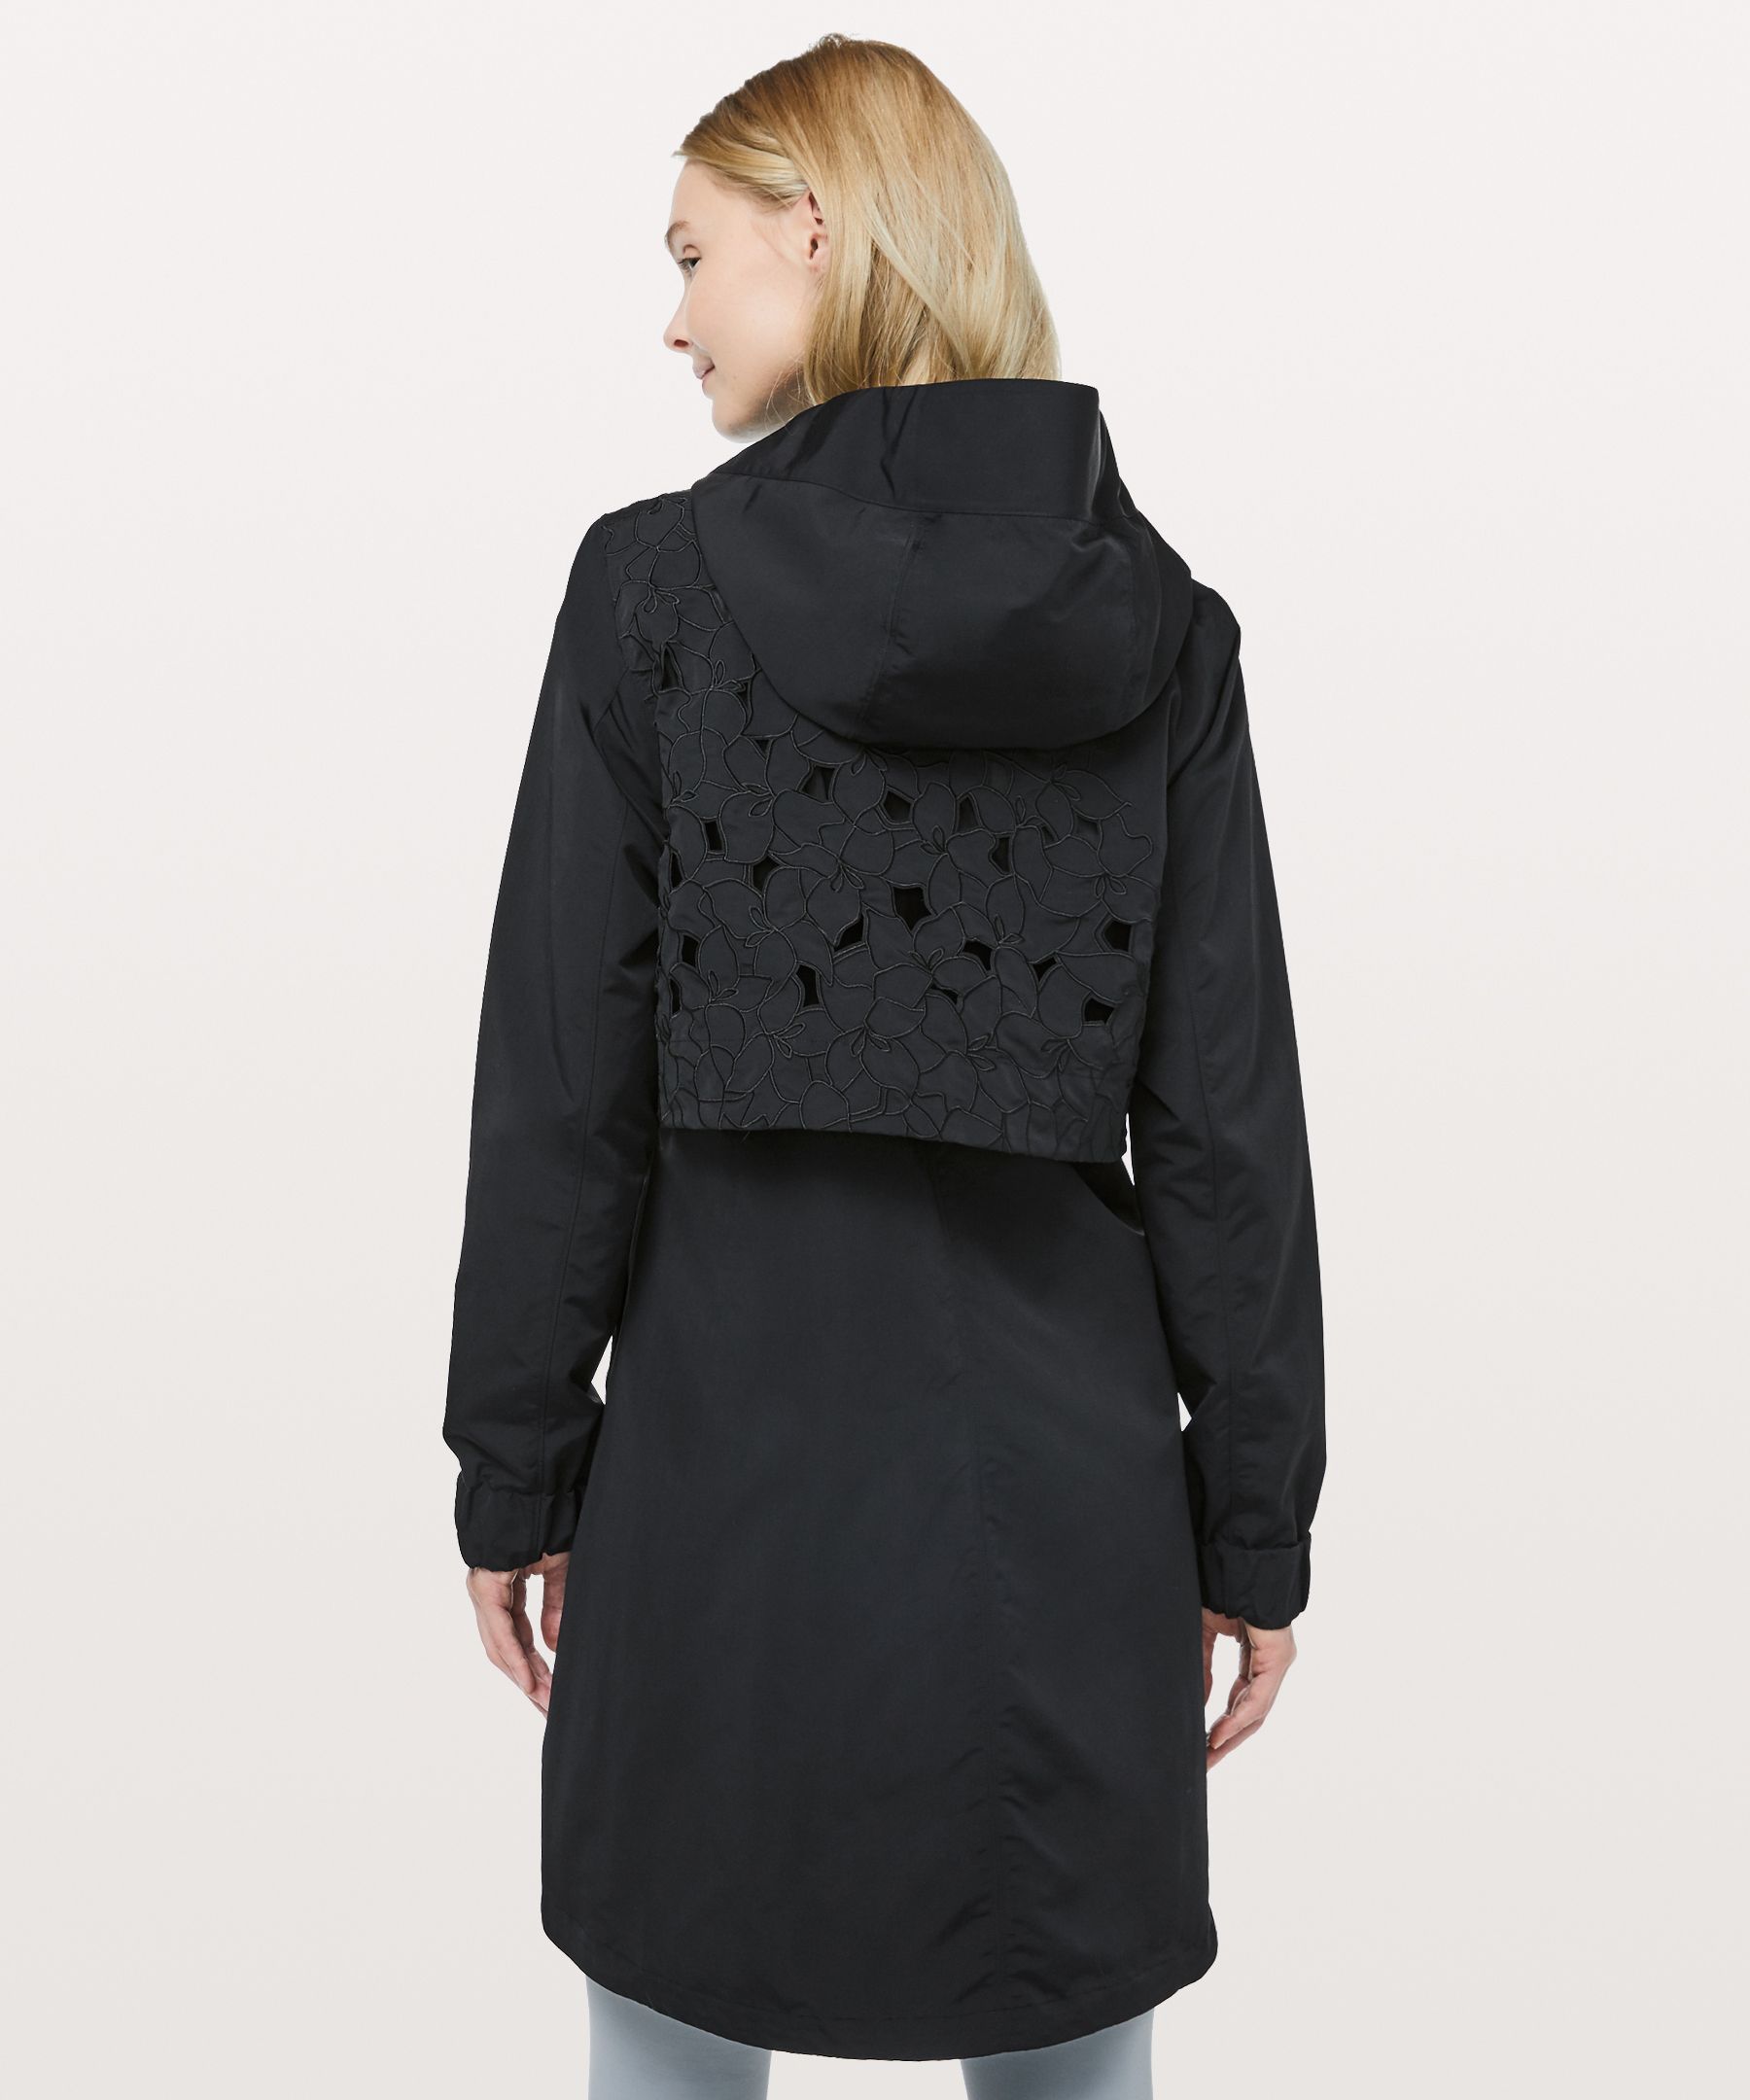 lululemon lace jacket